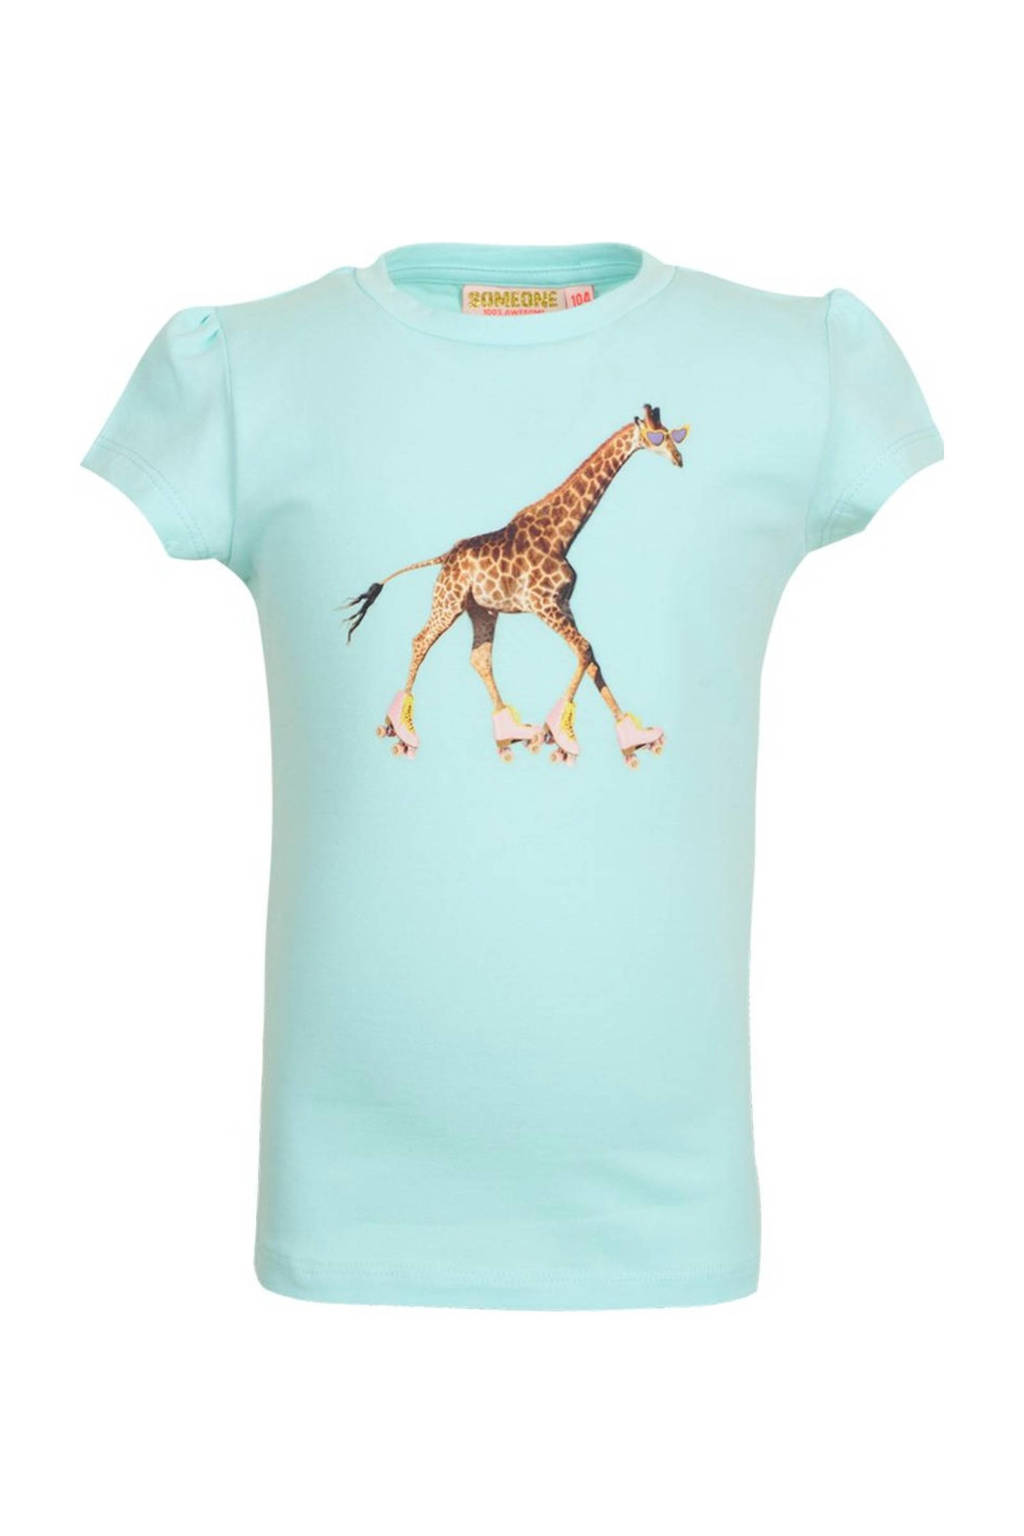 Blauwe meisjes Someone T-shirt Giraffe van stretchkatoen met printopdruk, korte mouwen en ronde hals